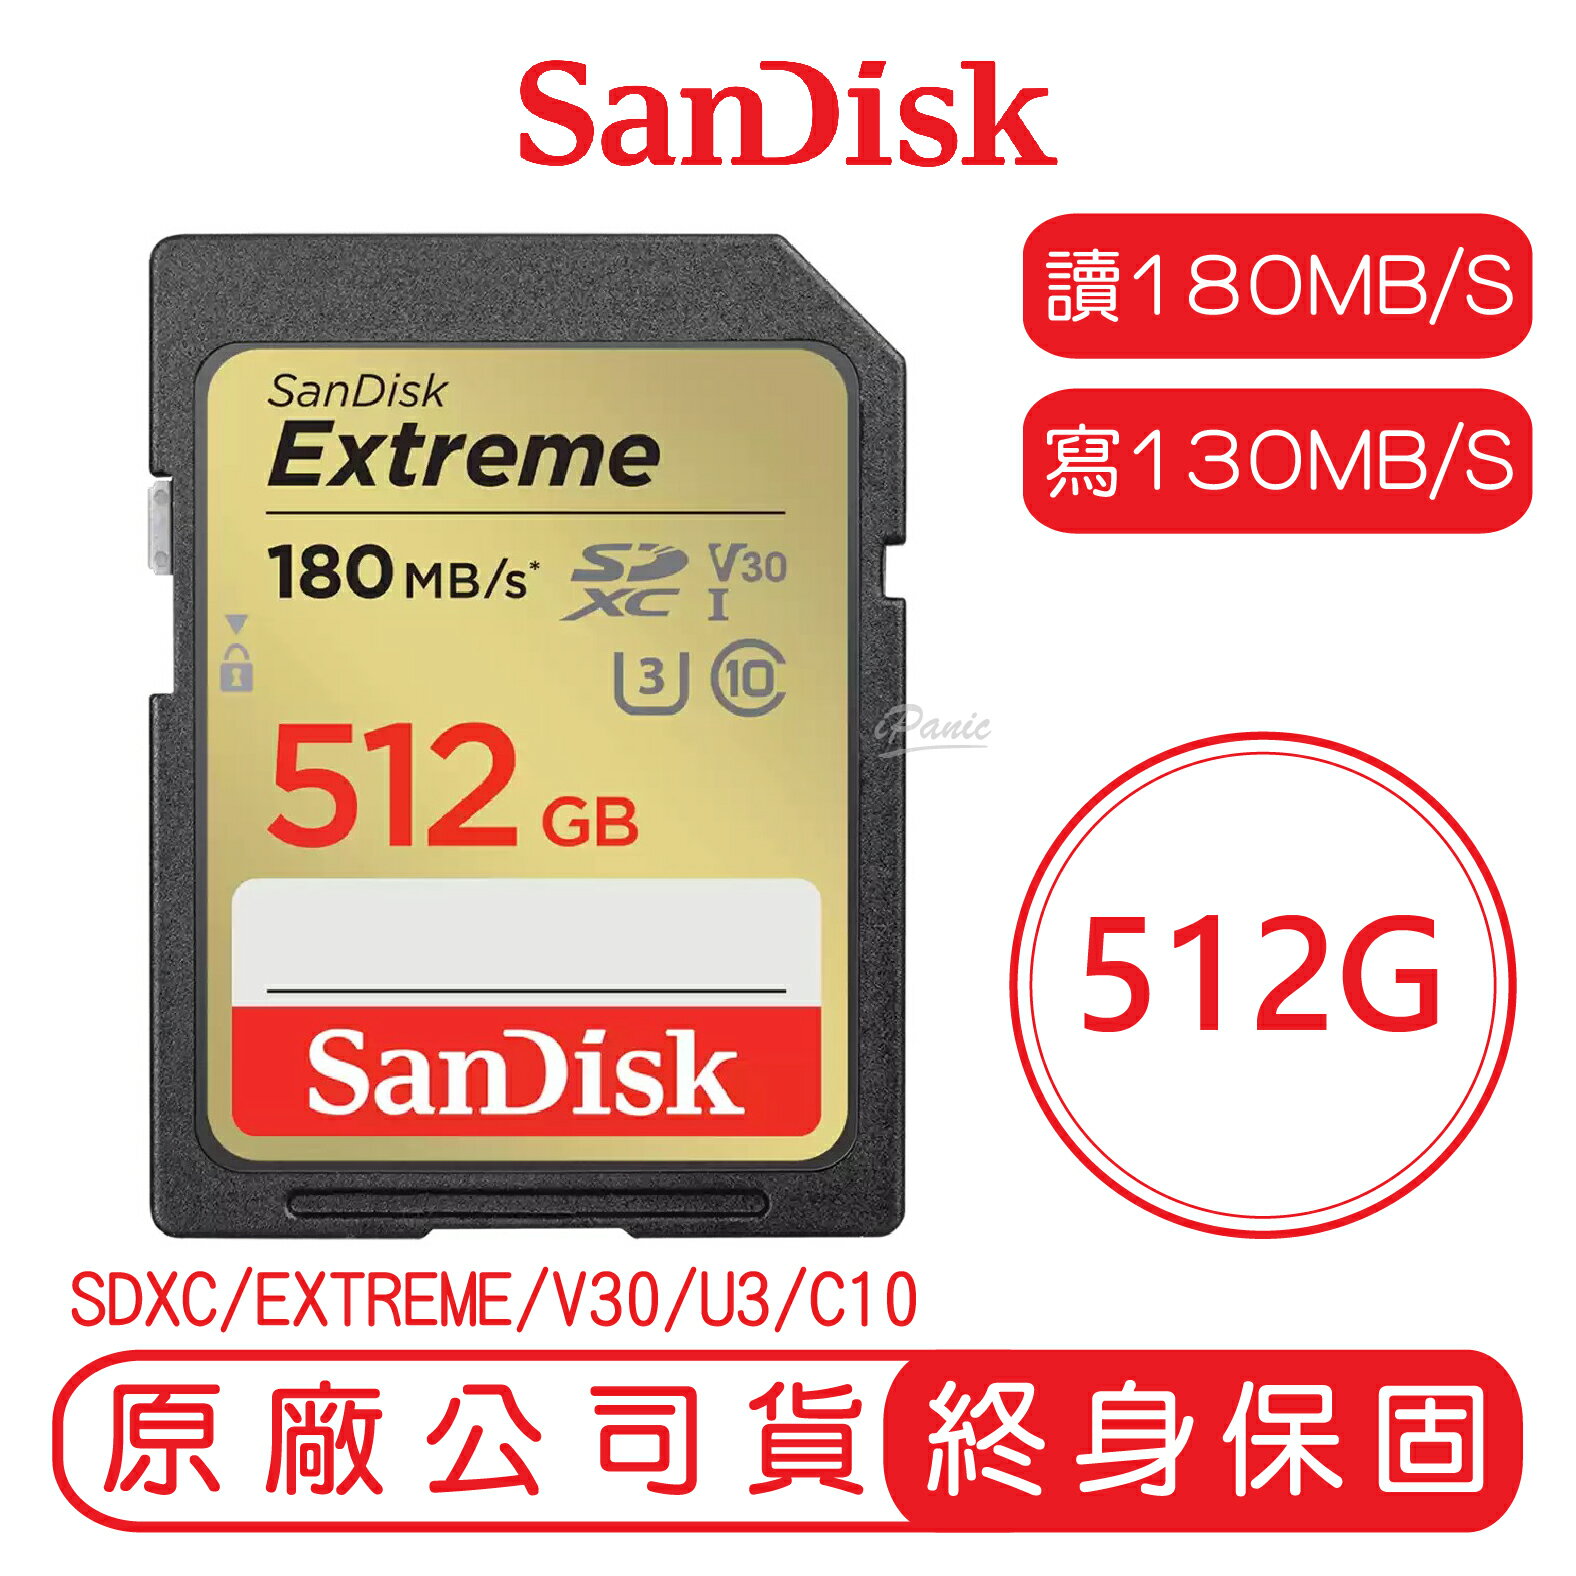 【9%點數】SanDisk 512GB EXTREME SD C10 U3 V30 記憶卡 讀180MB 寫130MB 512G SDXC【APP下單9%點數回饋】【限定樂天APP下單】